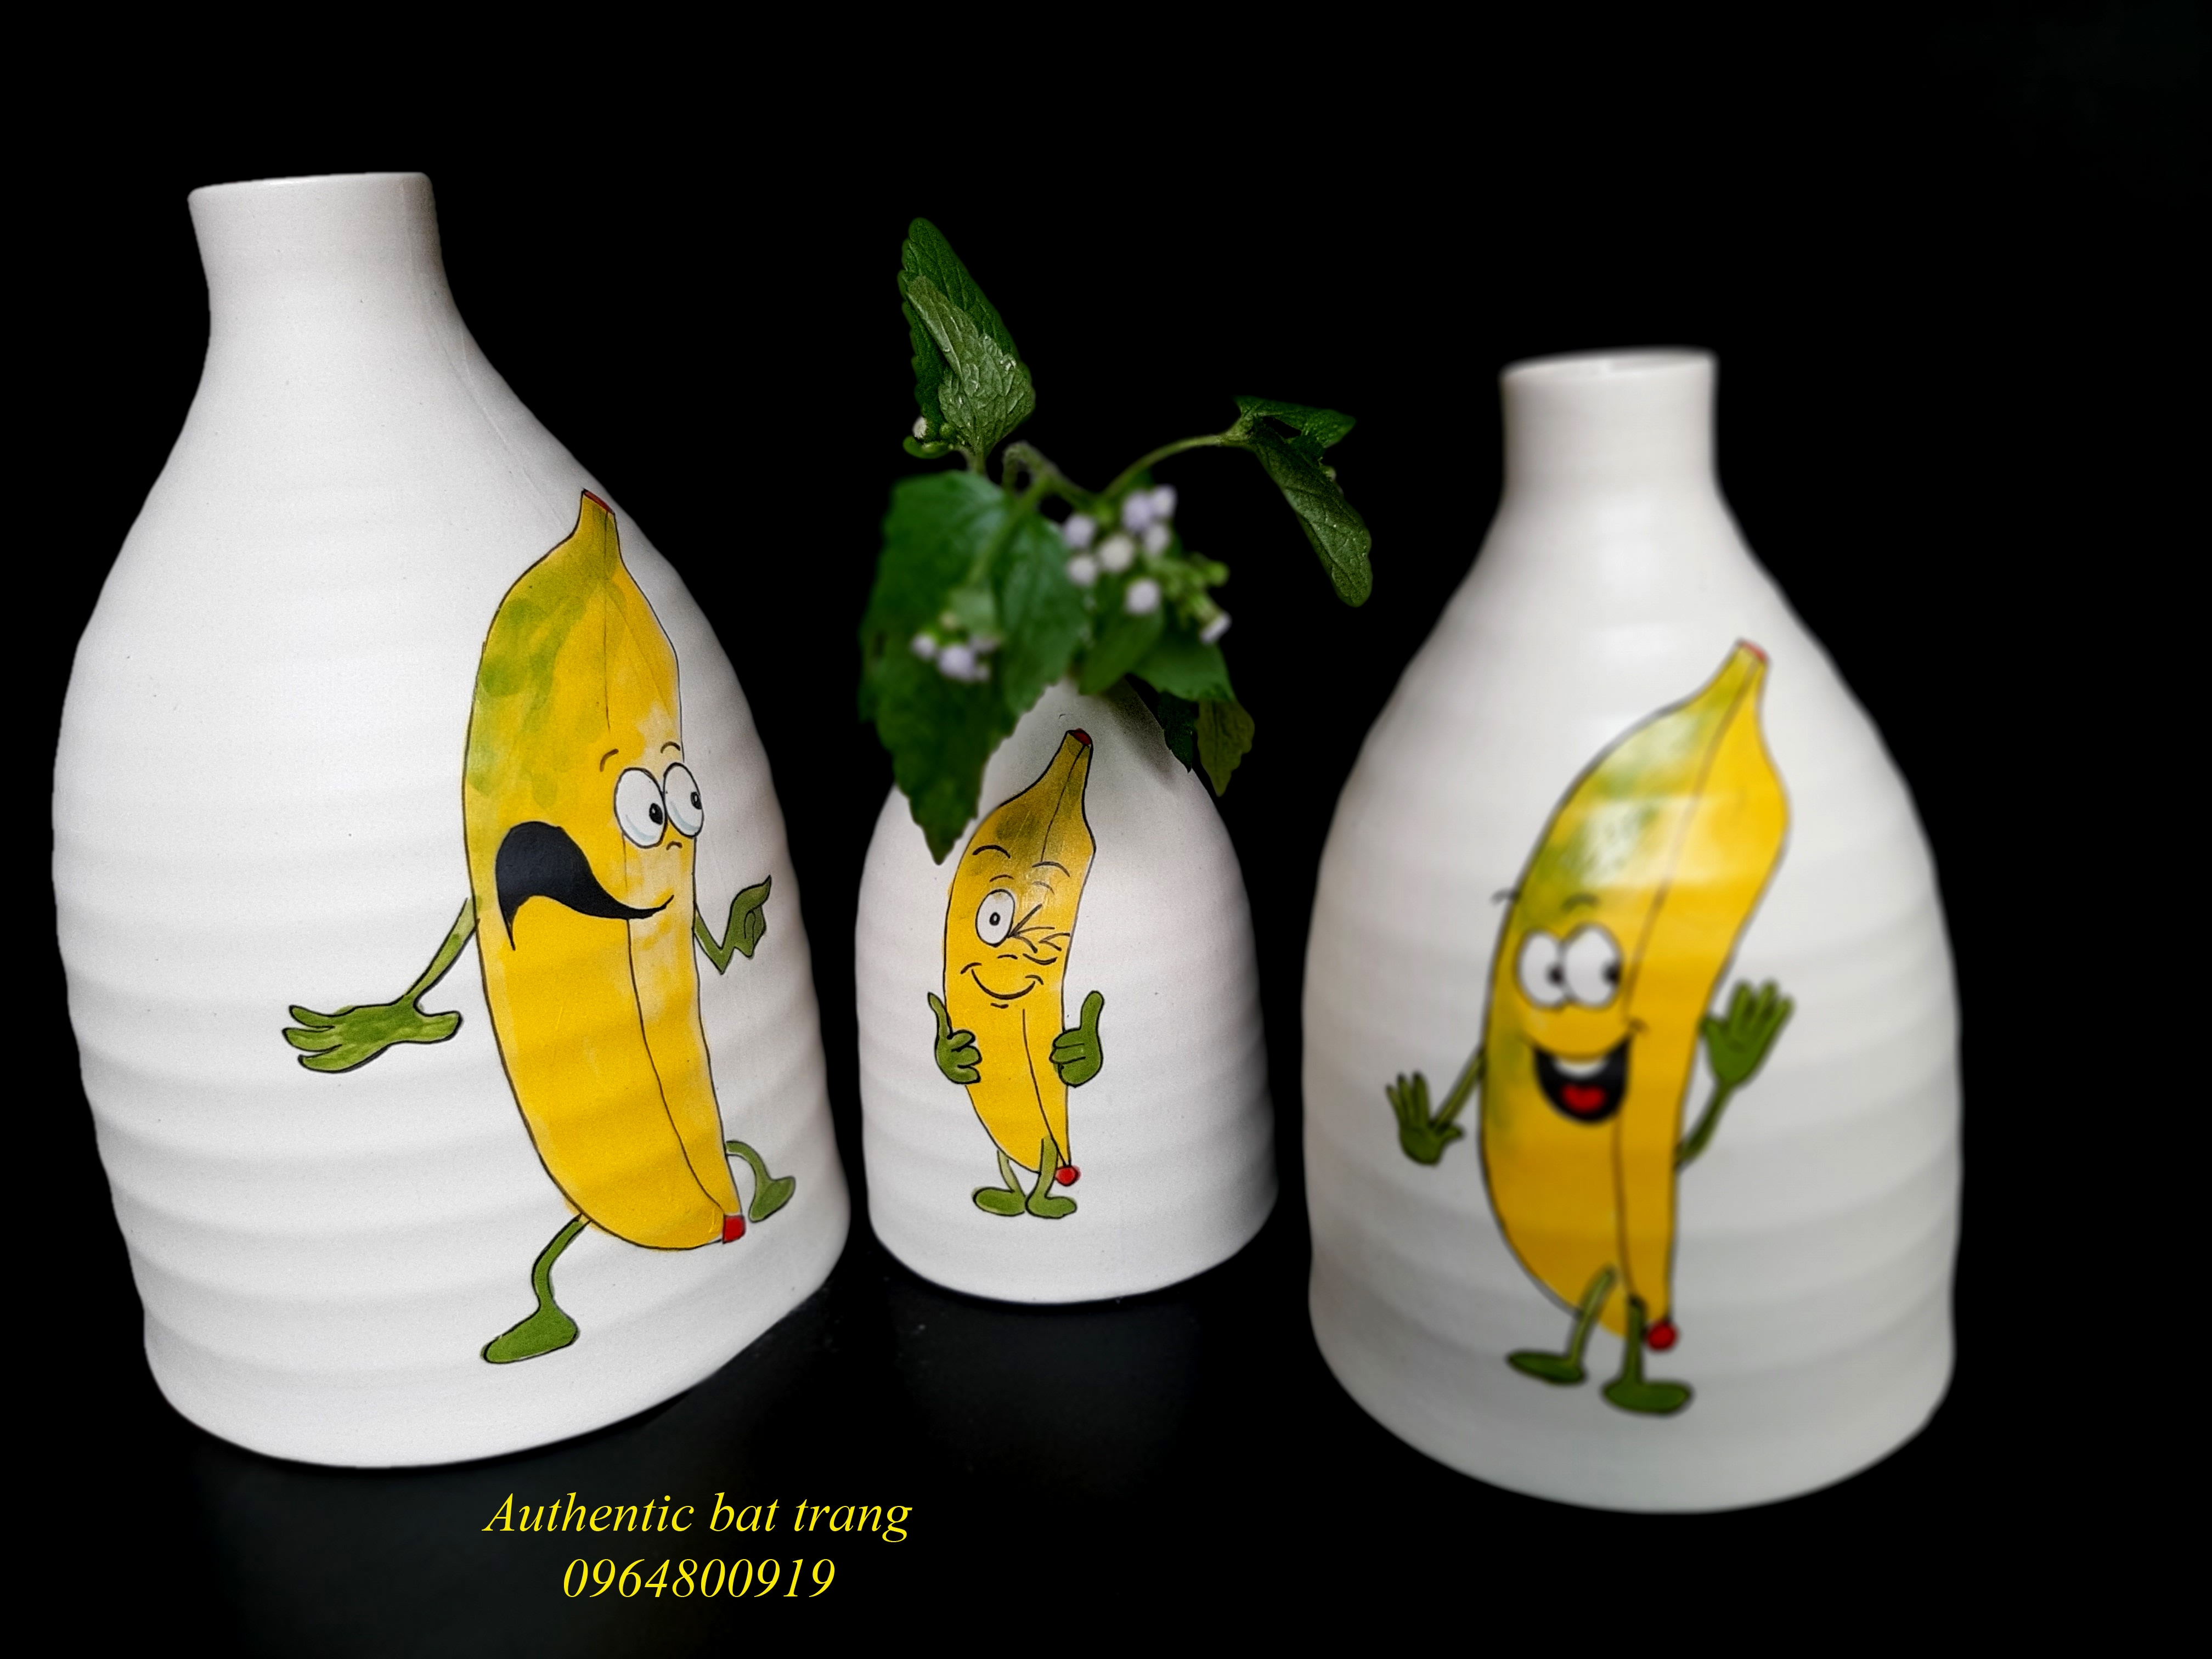 Banana vase set/ Bộ bình chuối trang trí nhà cửa, sản phẩm vẽ tay thủ công tại xưởng gốm sứ Authentic bat trang